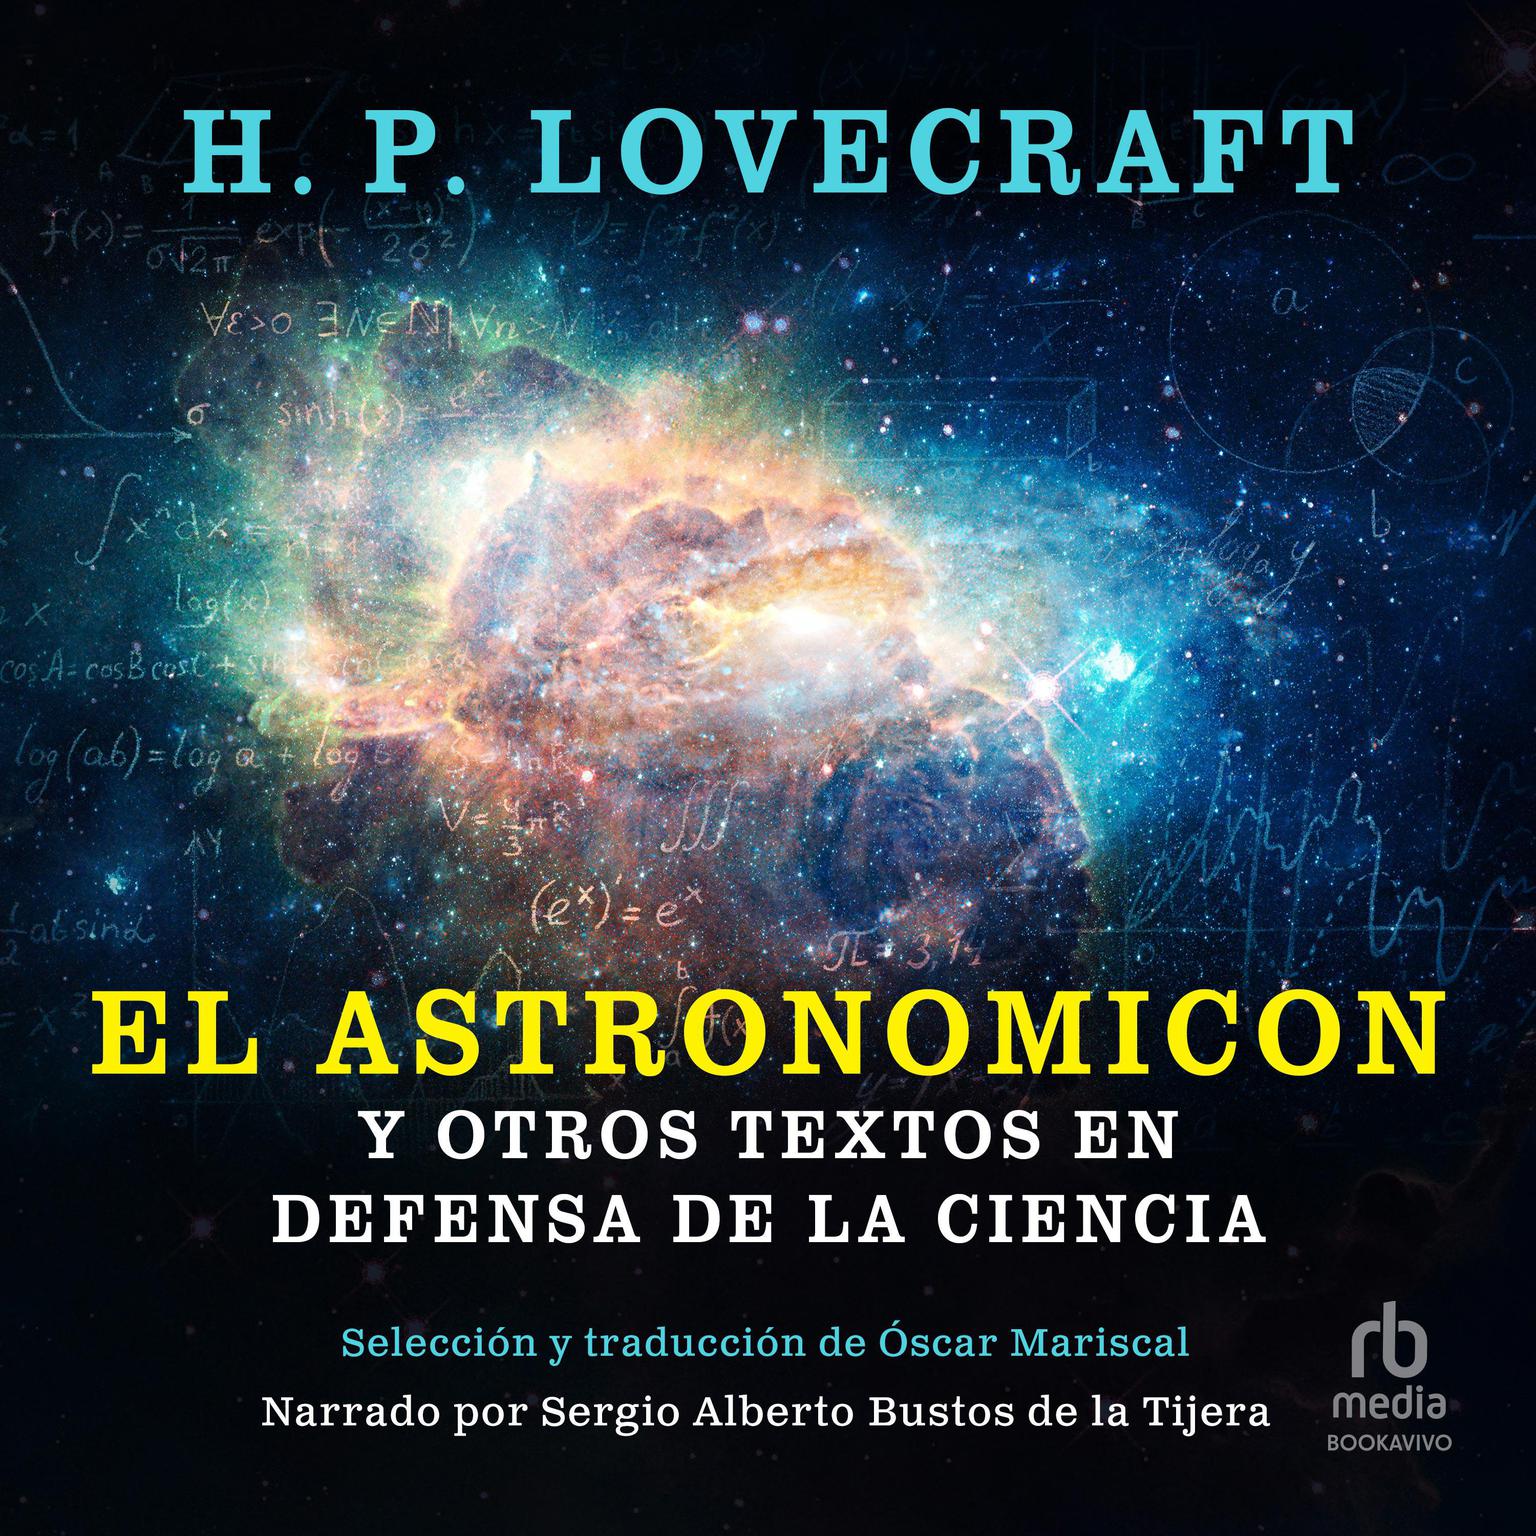 El Astronomicon y otros textos en defensa de la ciencia (The Astronomicon and other texts in defense of science) Audiobook, by H. P. Lovecraft